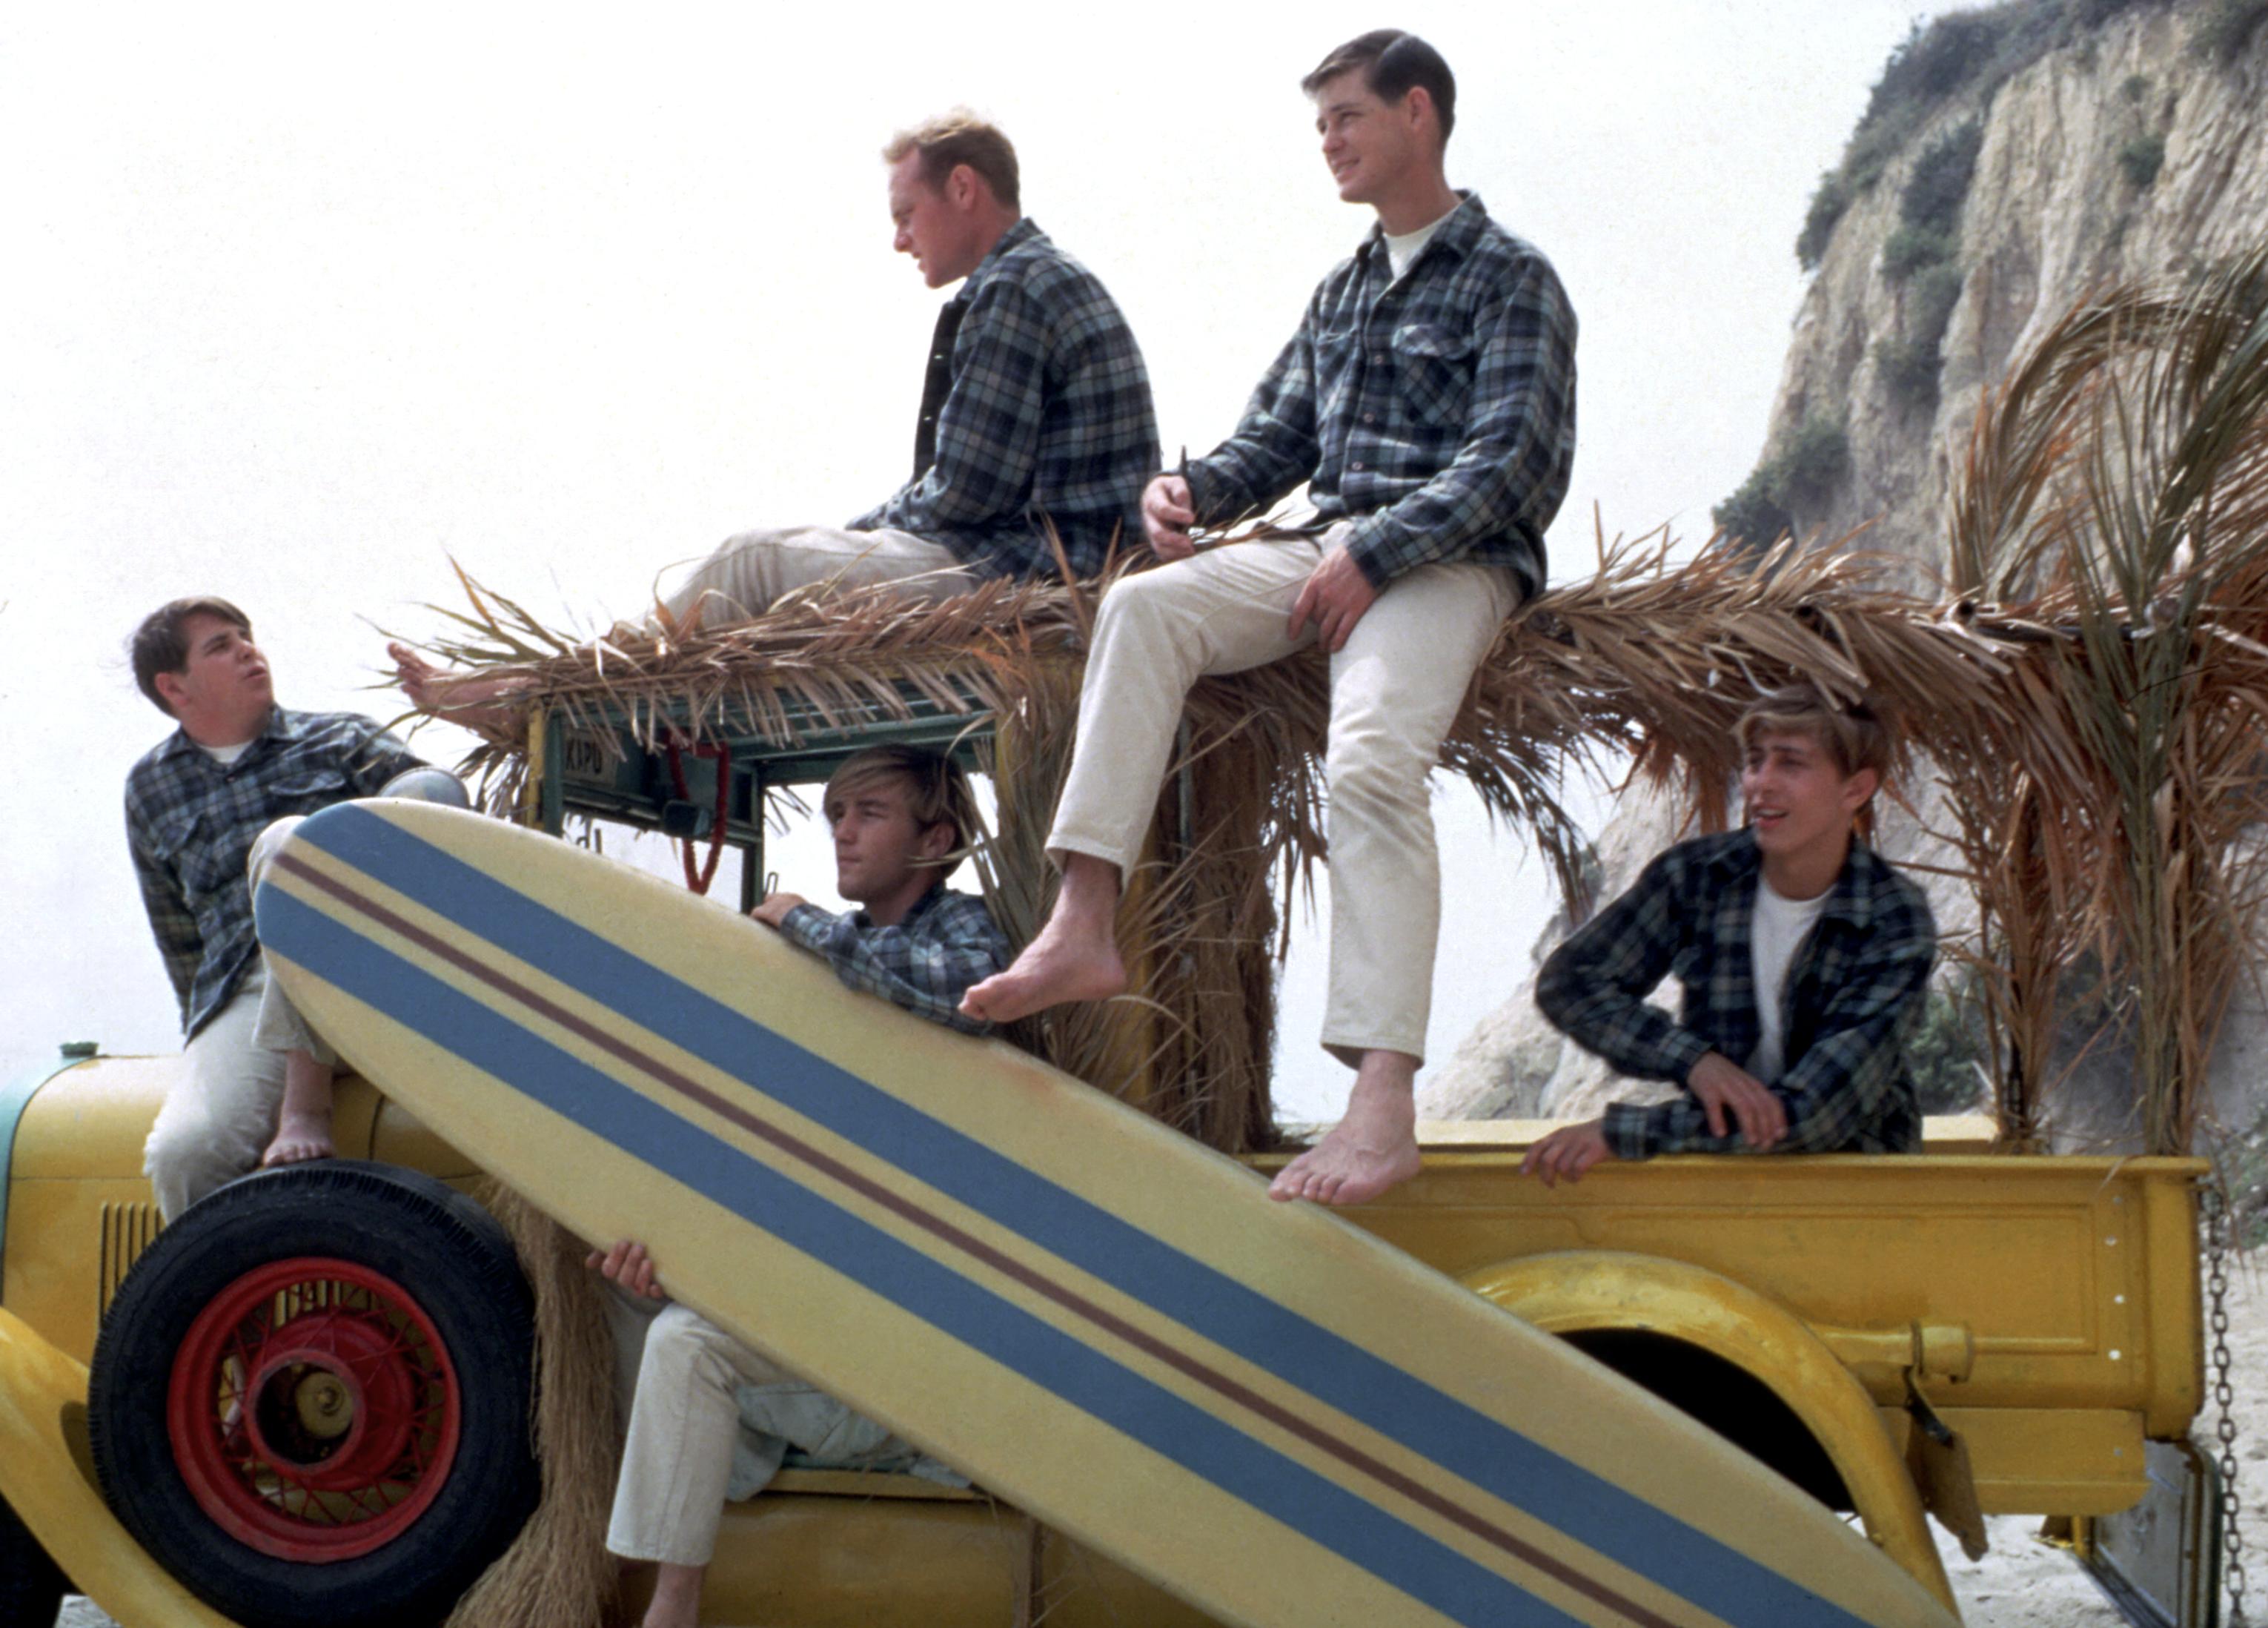 The Beach Boys with a car